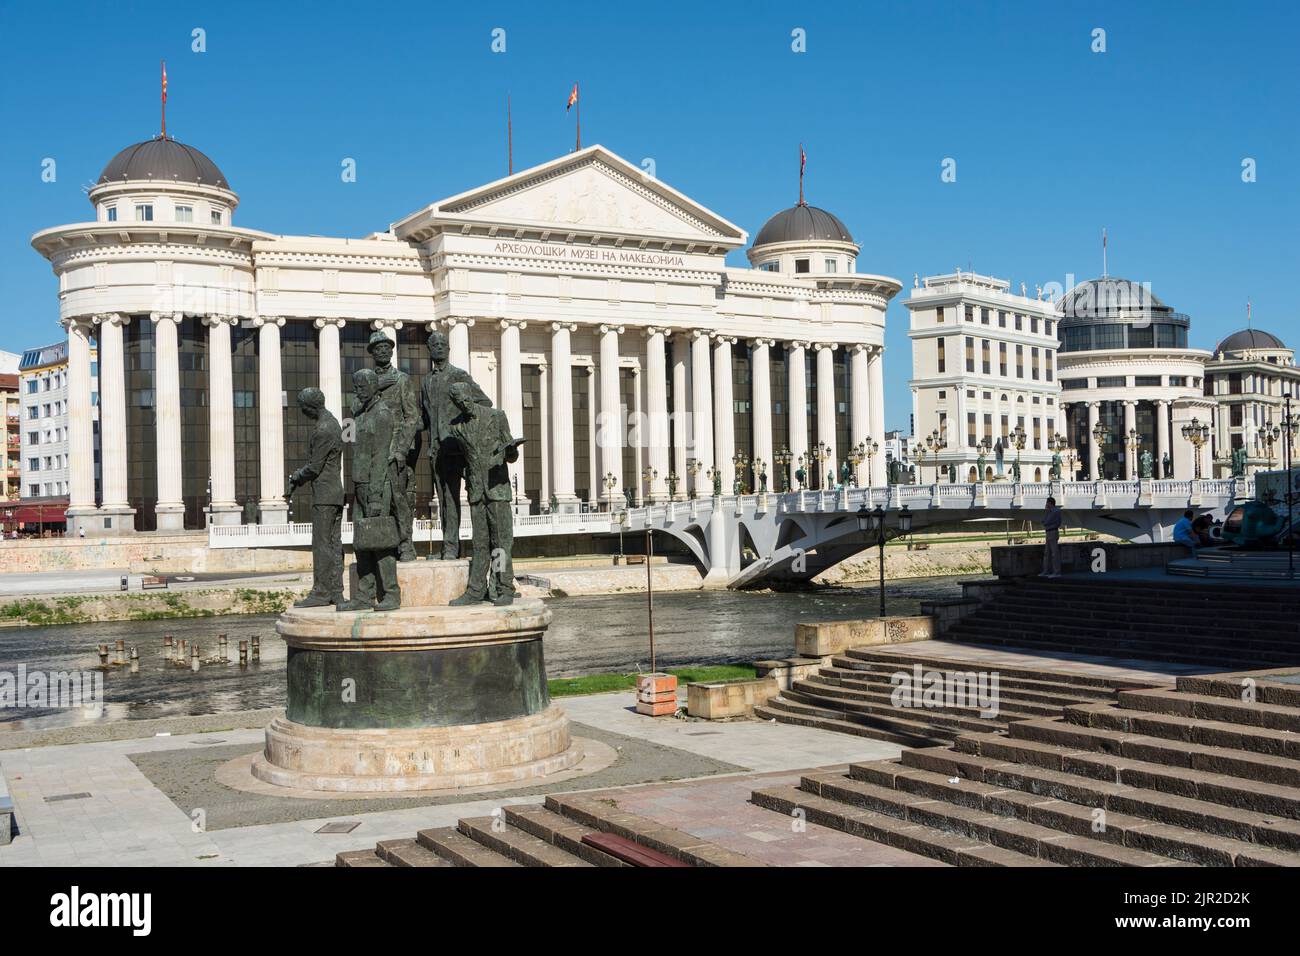 Monument en l'honneur des Gemidzhii (les Boatmen de Thessalonique ou les Assassins de Salonica) et du musée archéologique de Skopje, en Macédoine du Nord Banque D'Images